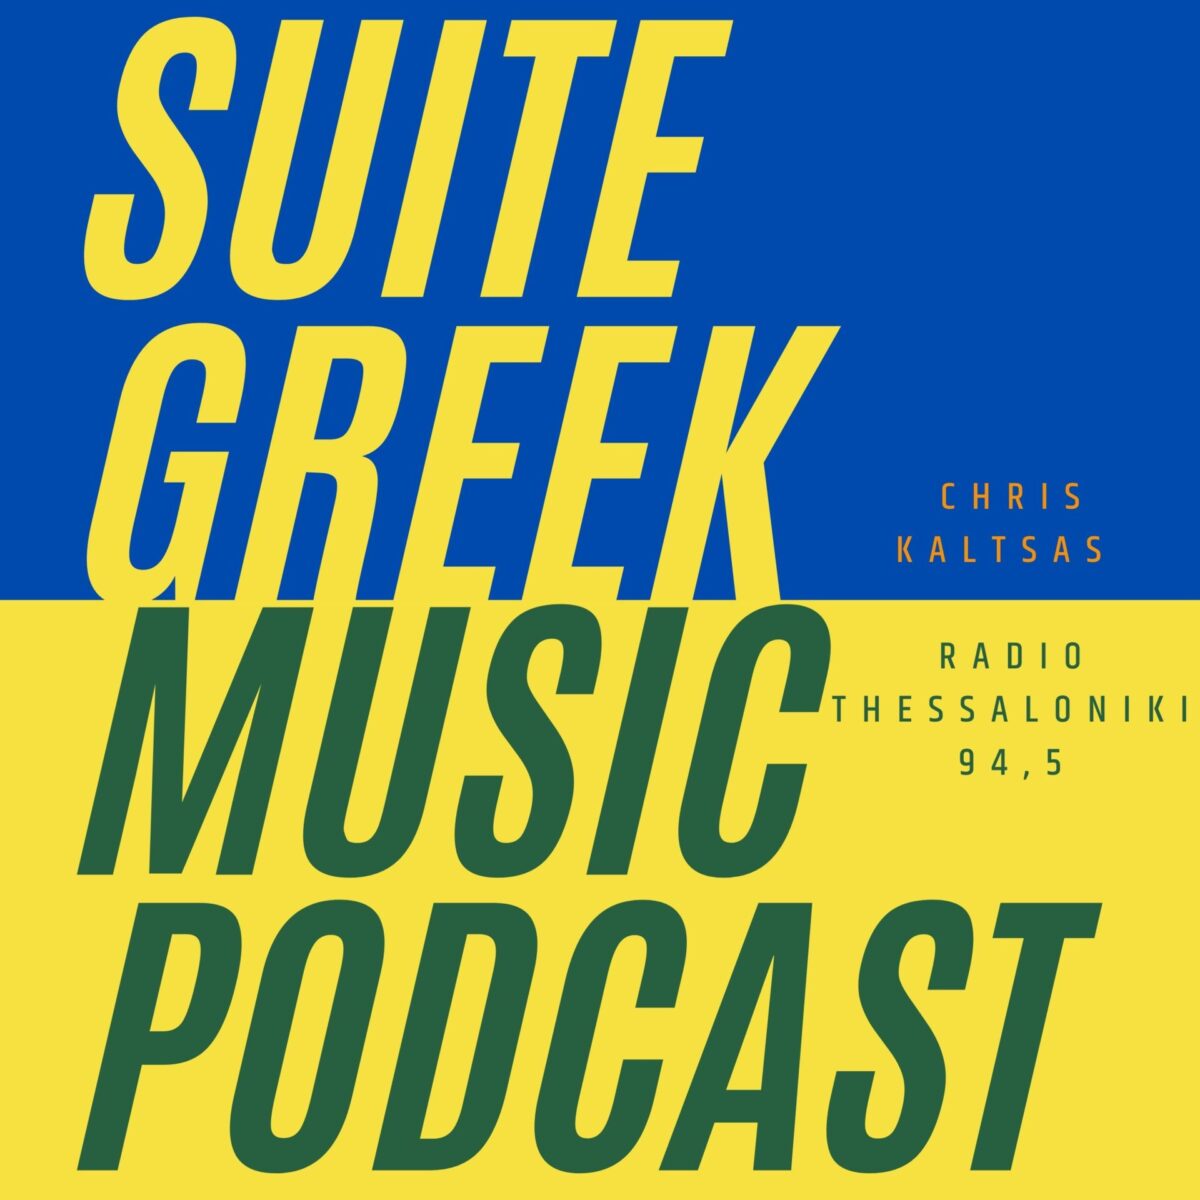 Suite Greek Music podcast στο Ράδιο Θεσσαλονίκη 94,5 S03E08